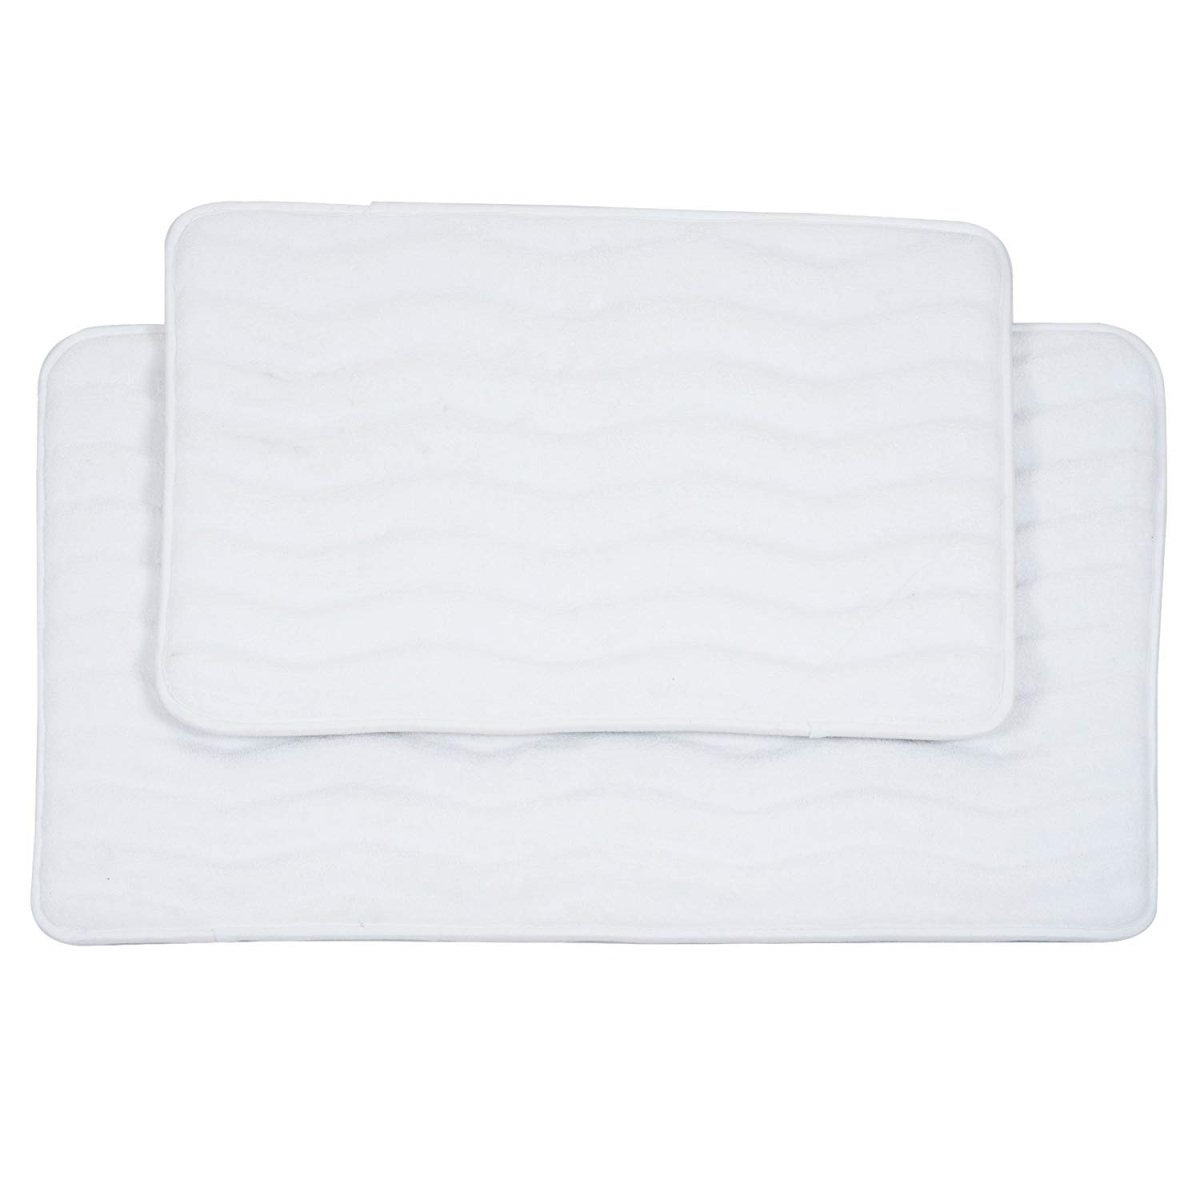 67a-26549 2 Piece Memory Foam Bath Mat Set, White